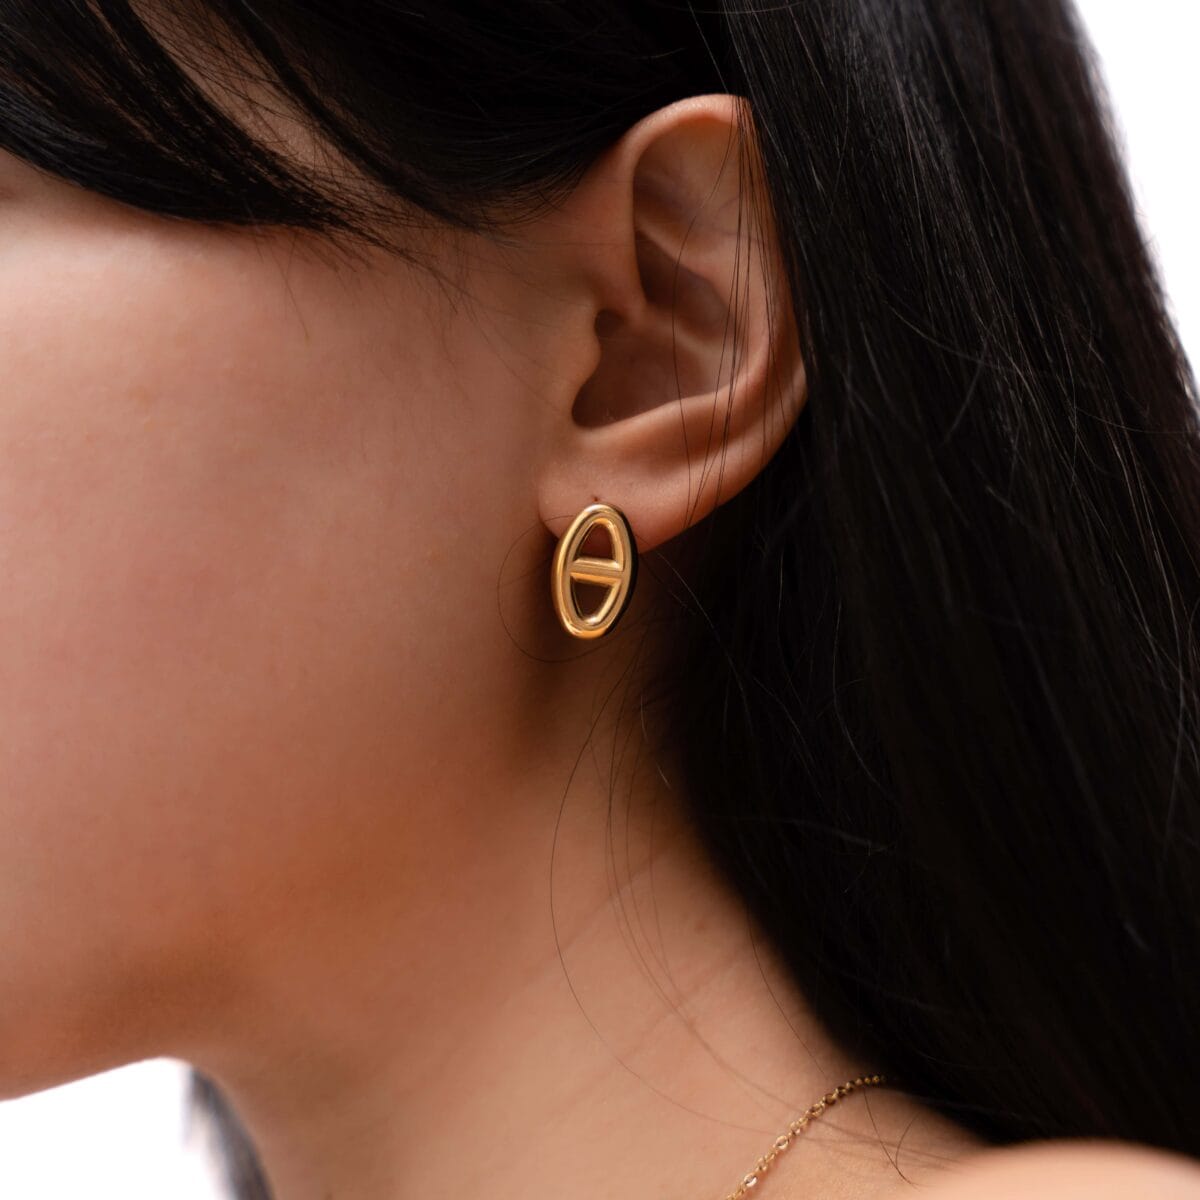 https://m.clubbella.co/product/hash-gold-earrings/ DSC09366